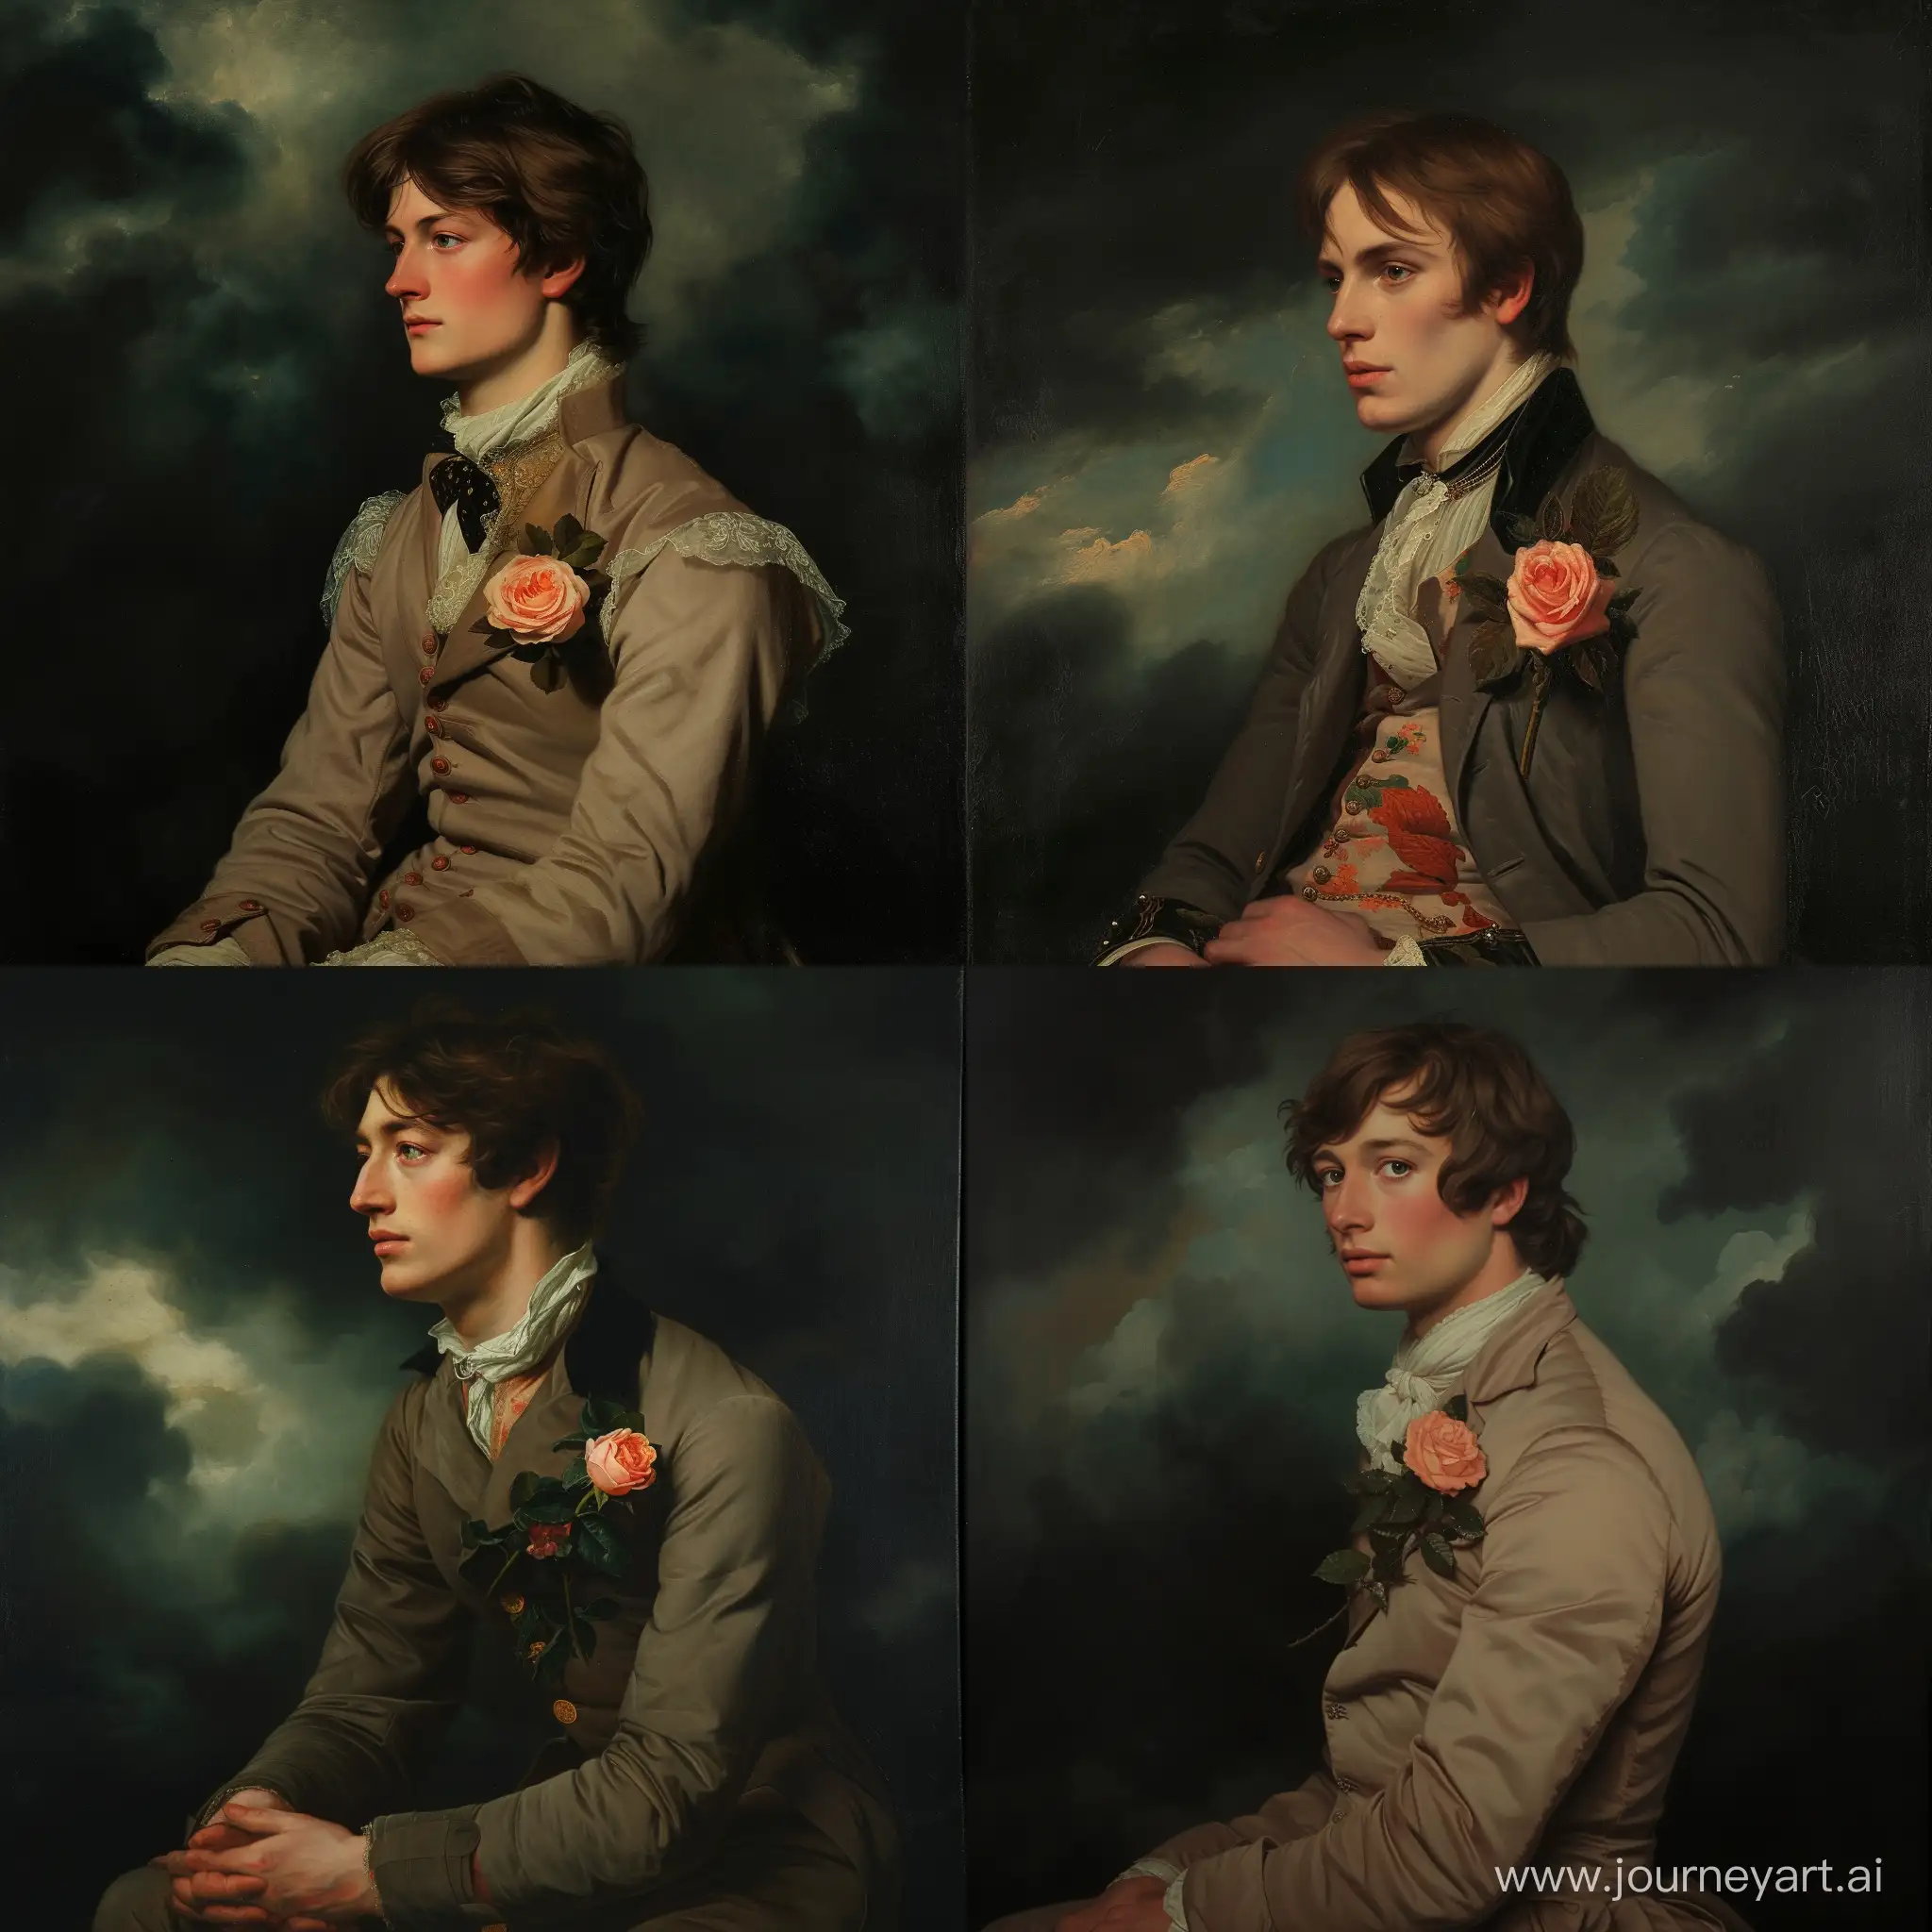 VictorianEra-Portrait-Elegant-Man-in-FullCollar-Attire-with-Rose